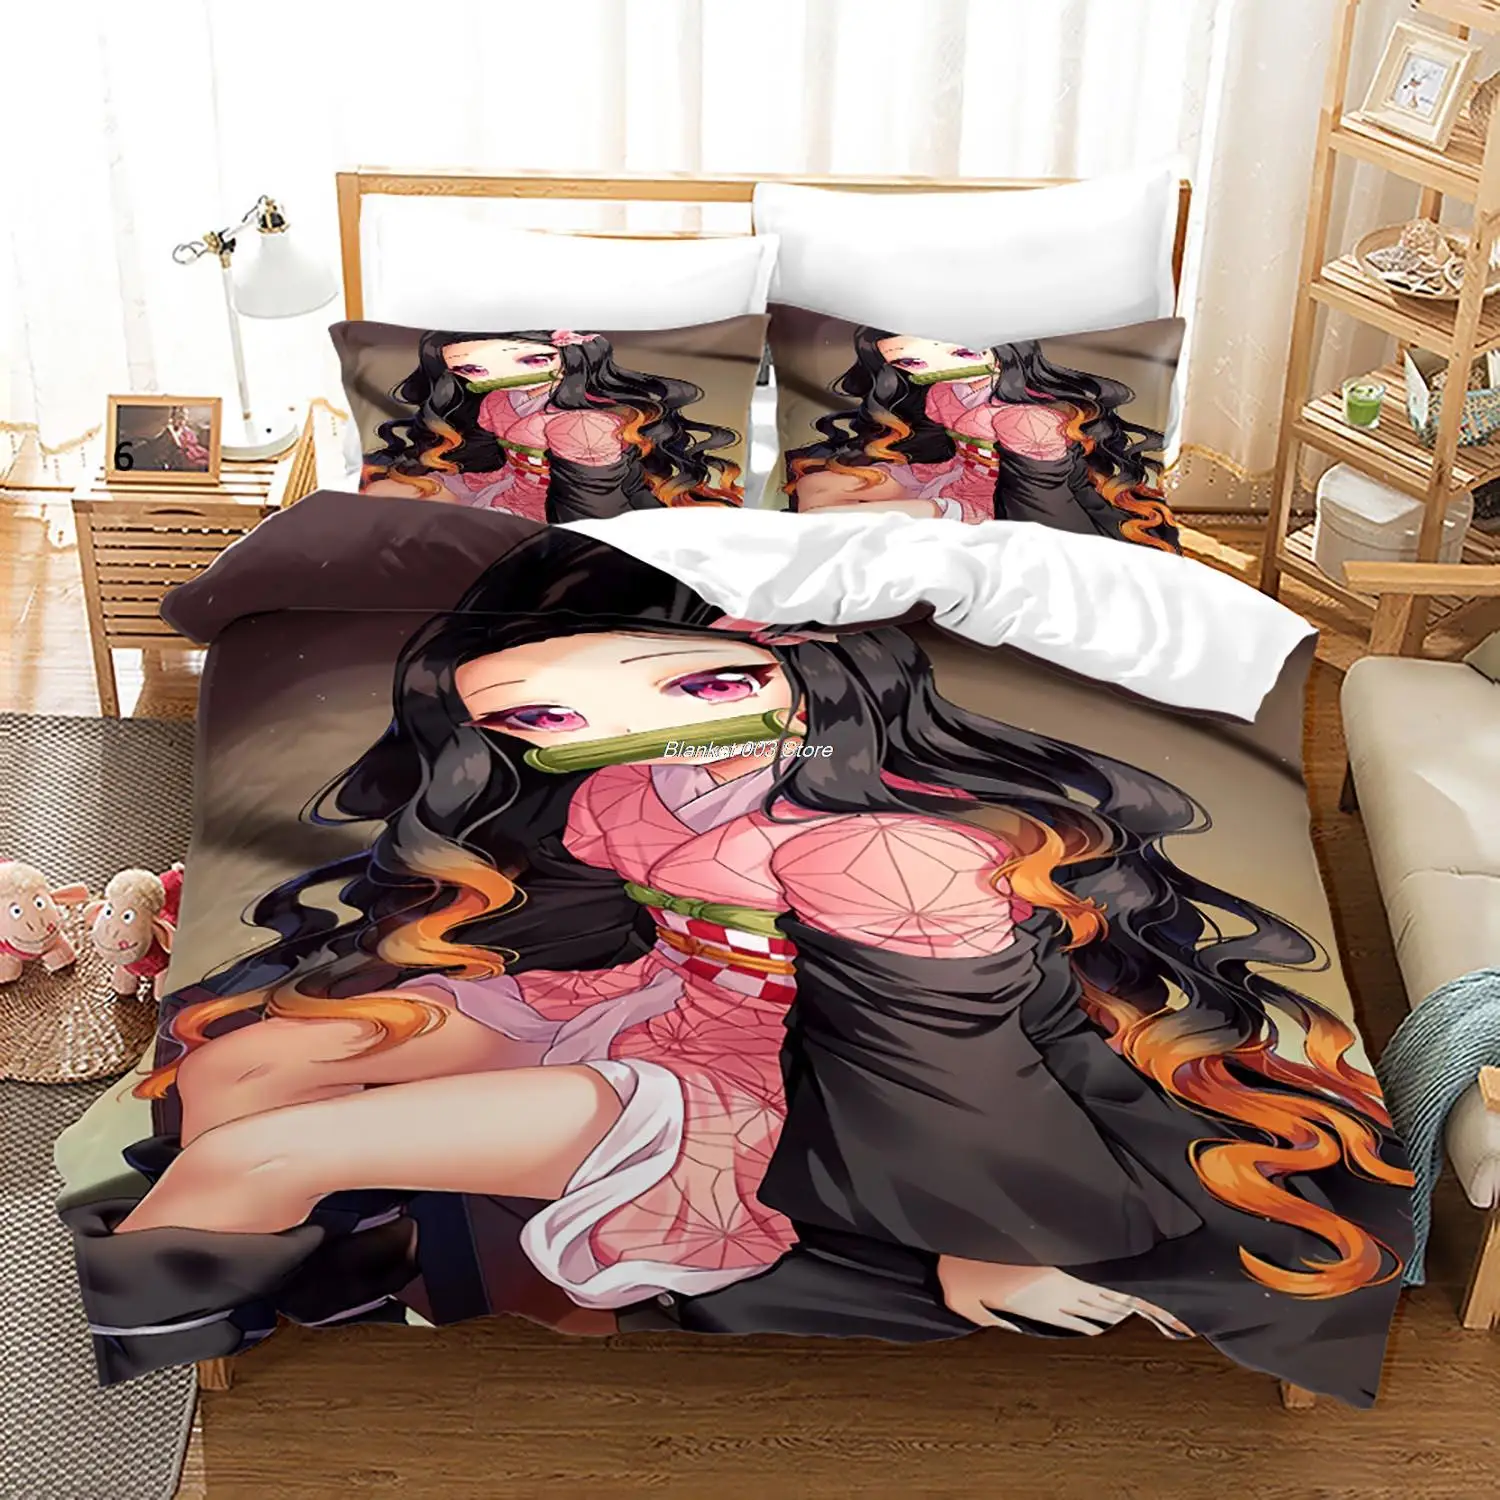 Shop Demon Slayer Bed Sheet Set Anime online